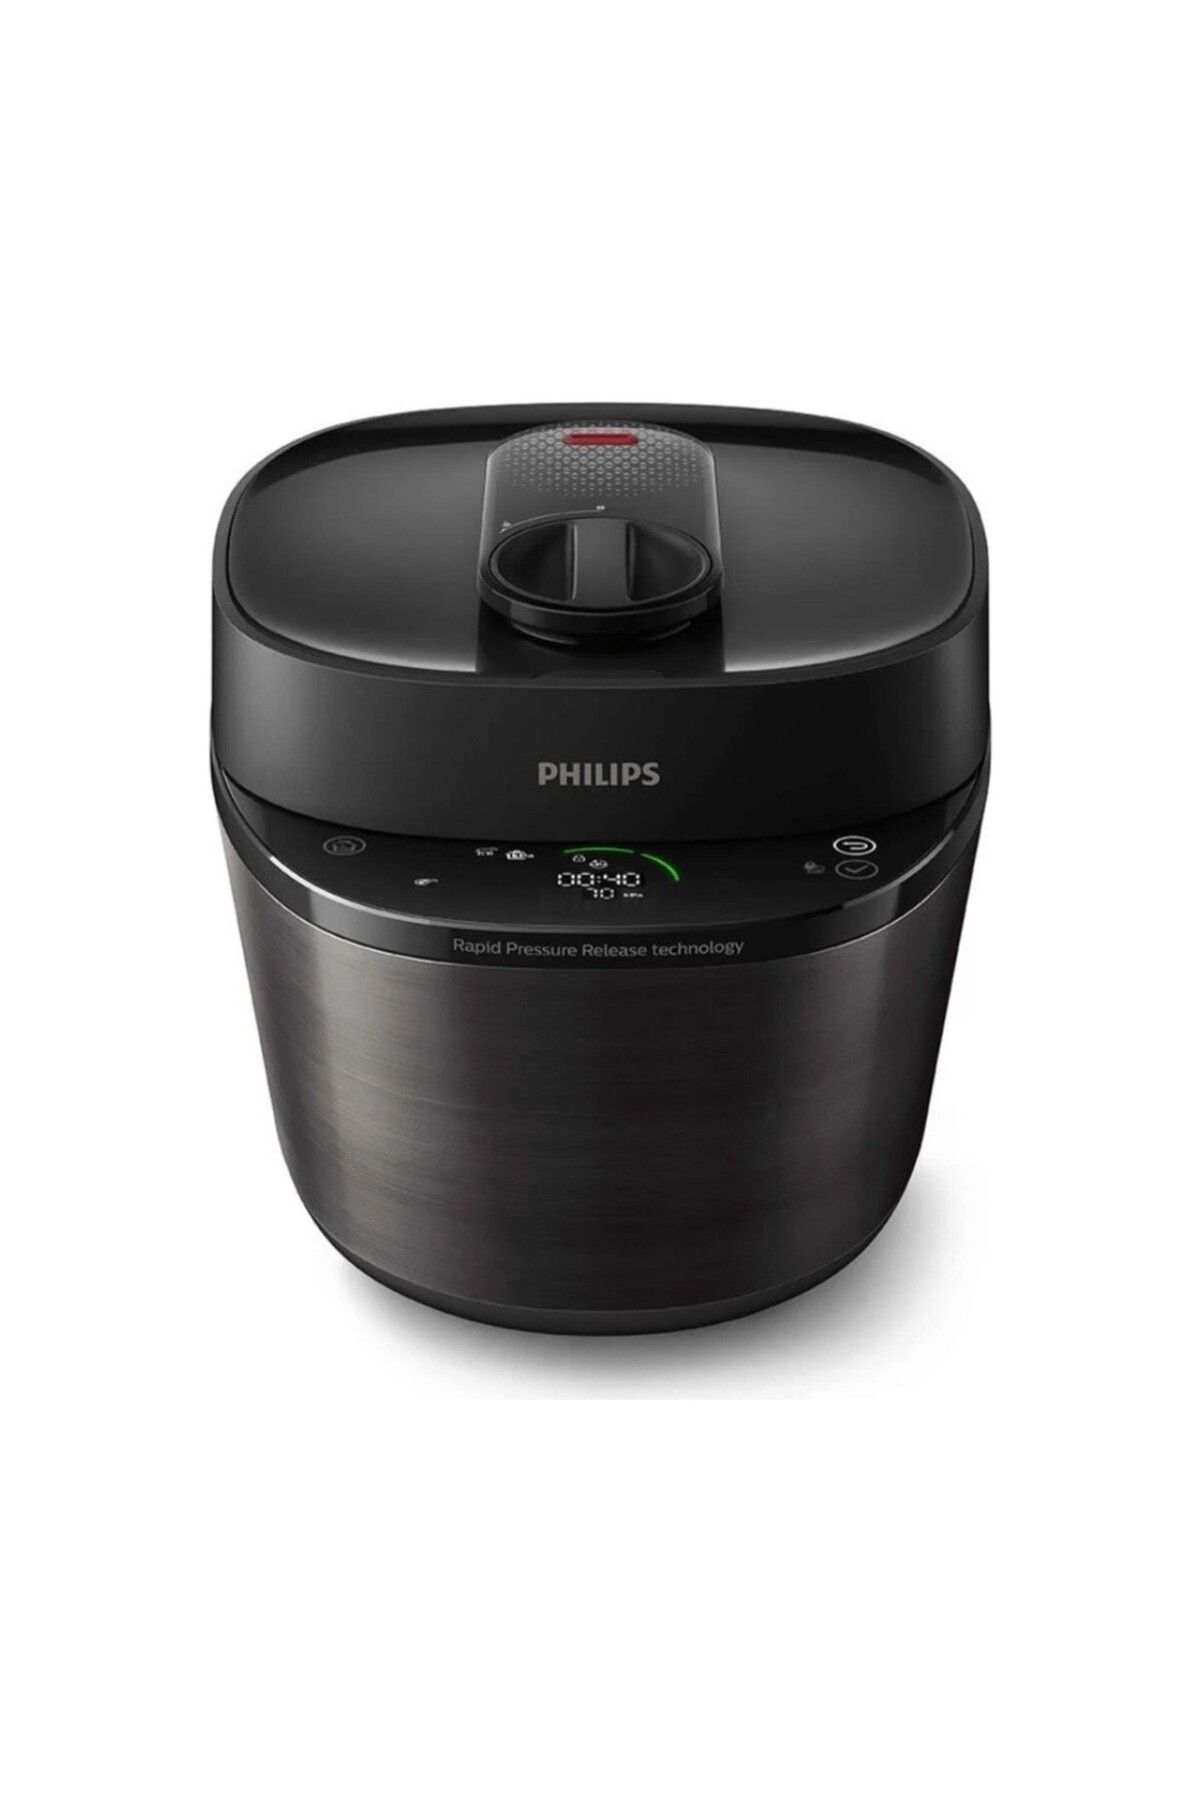 Philips VP SERİ Aile Boyu Yeni Nesil Elektrikli Akıllı Buharlı Pişirici Fritöz, 5l Kapasite, 1000 W , Siyah